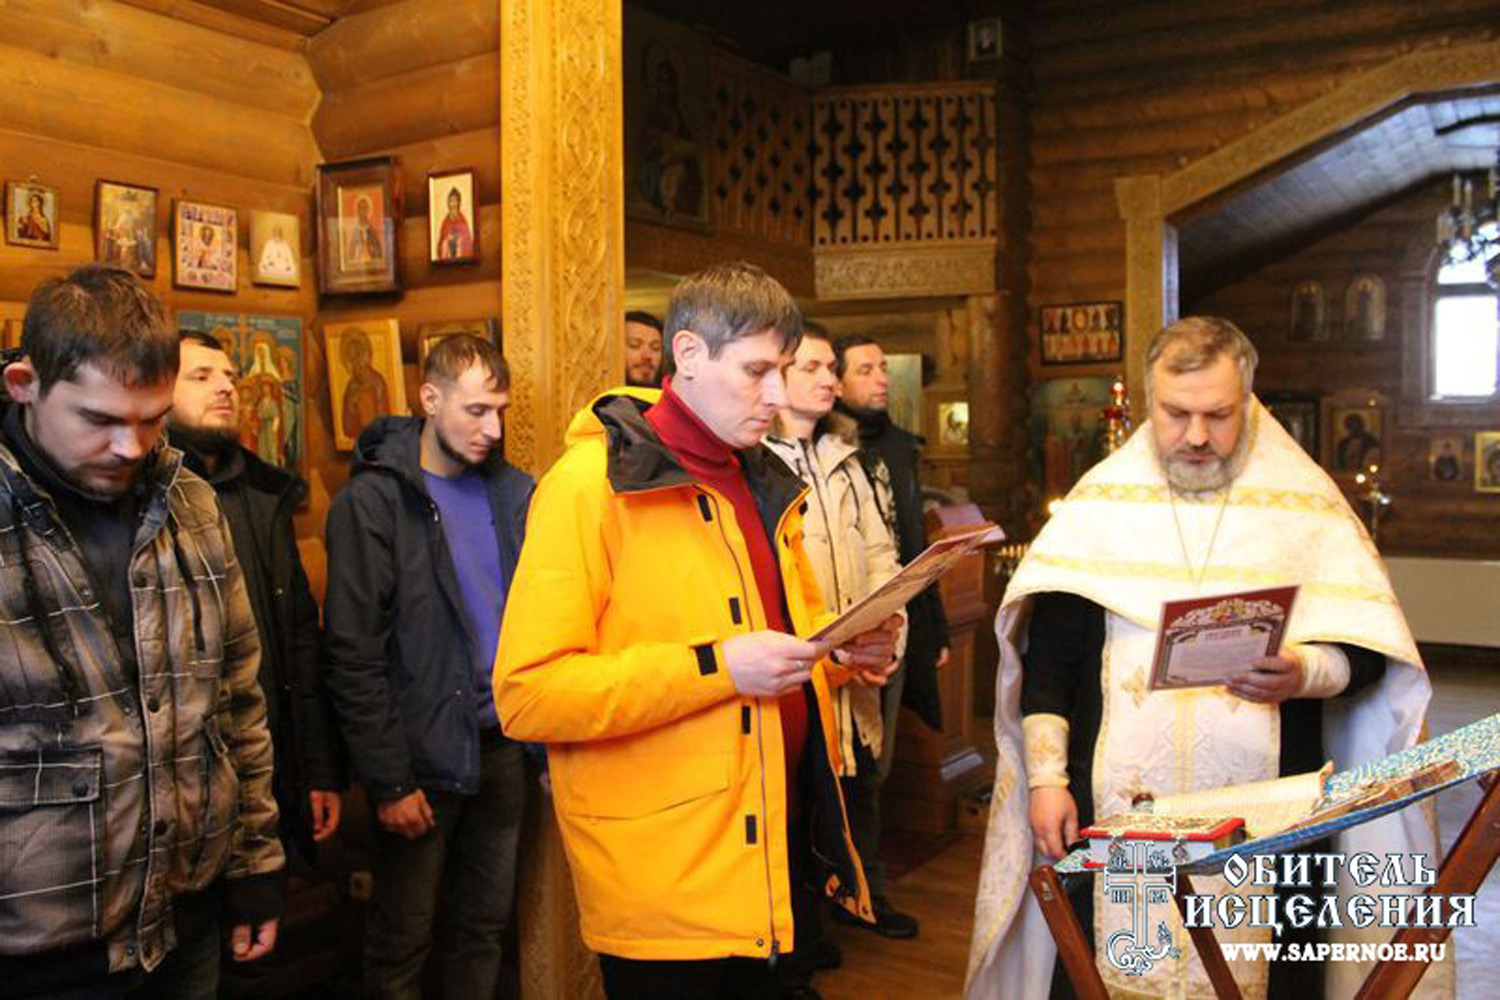 RÚSSIA: Ampliação de um centro de reabilitação ortodoxo em Sapjornoe para toxicodependentes em recuperação